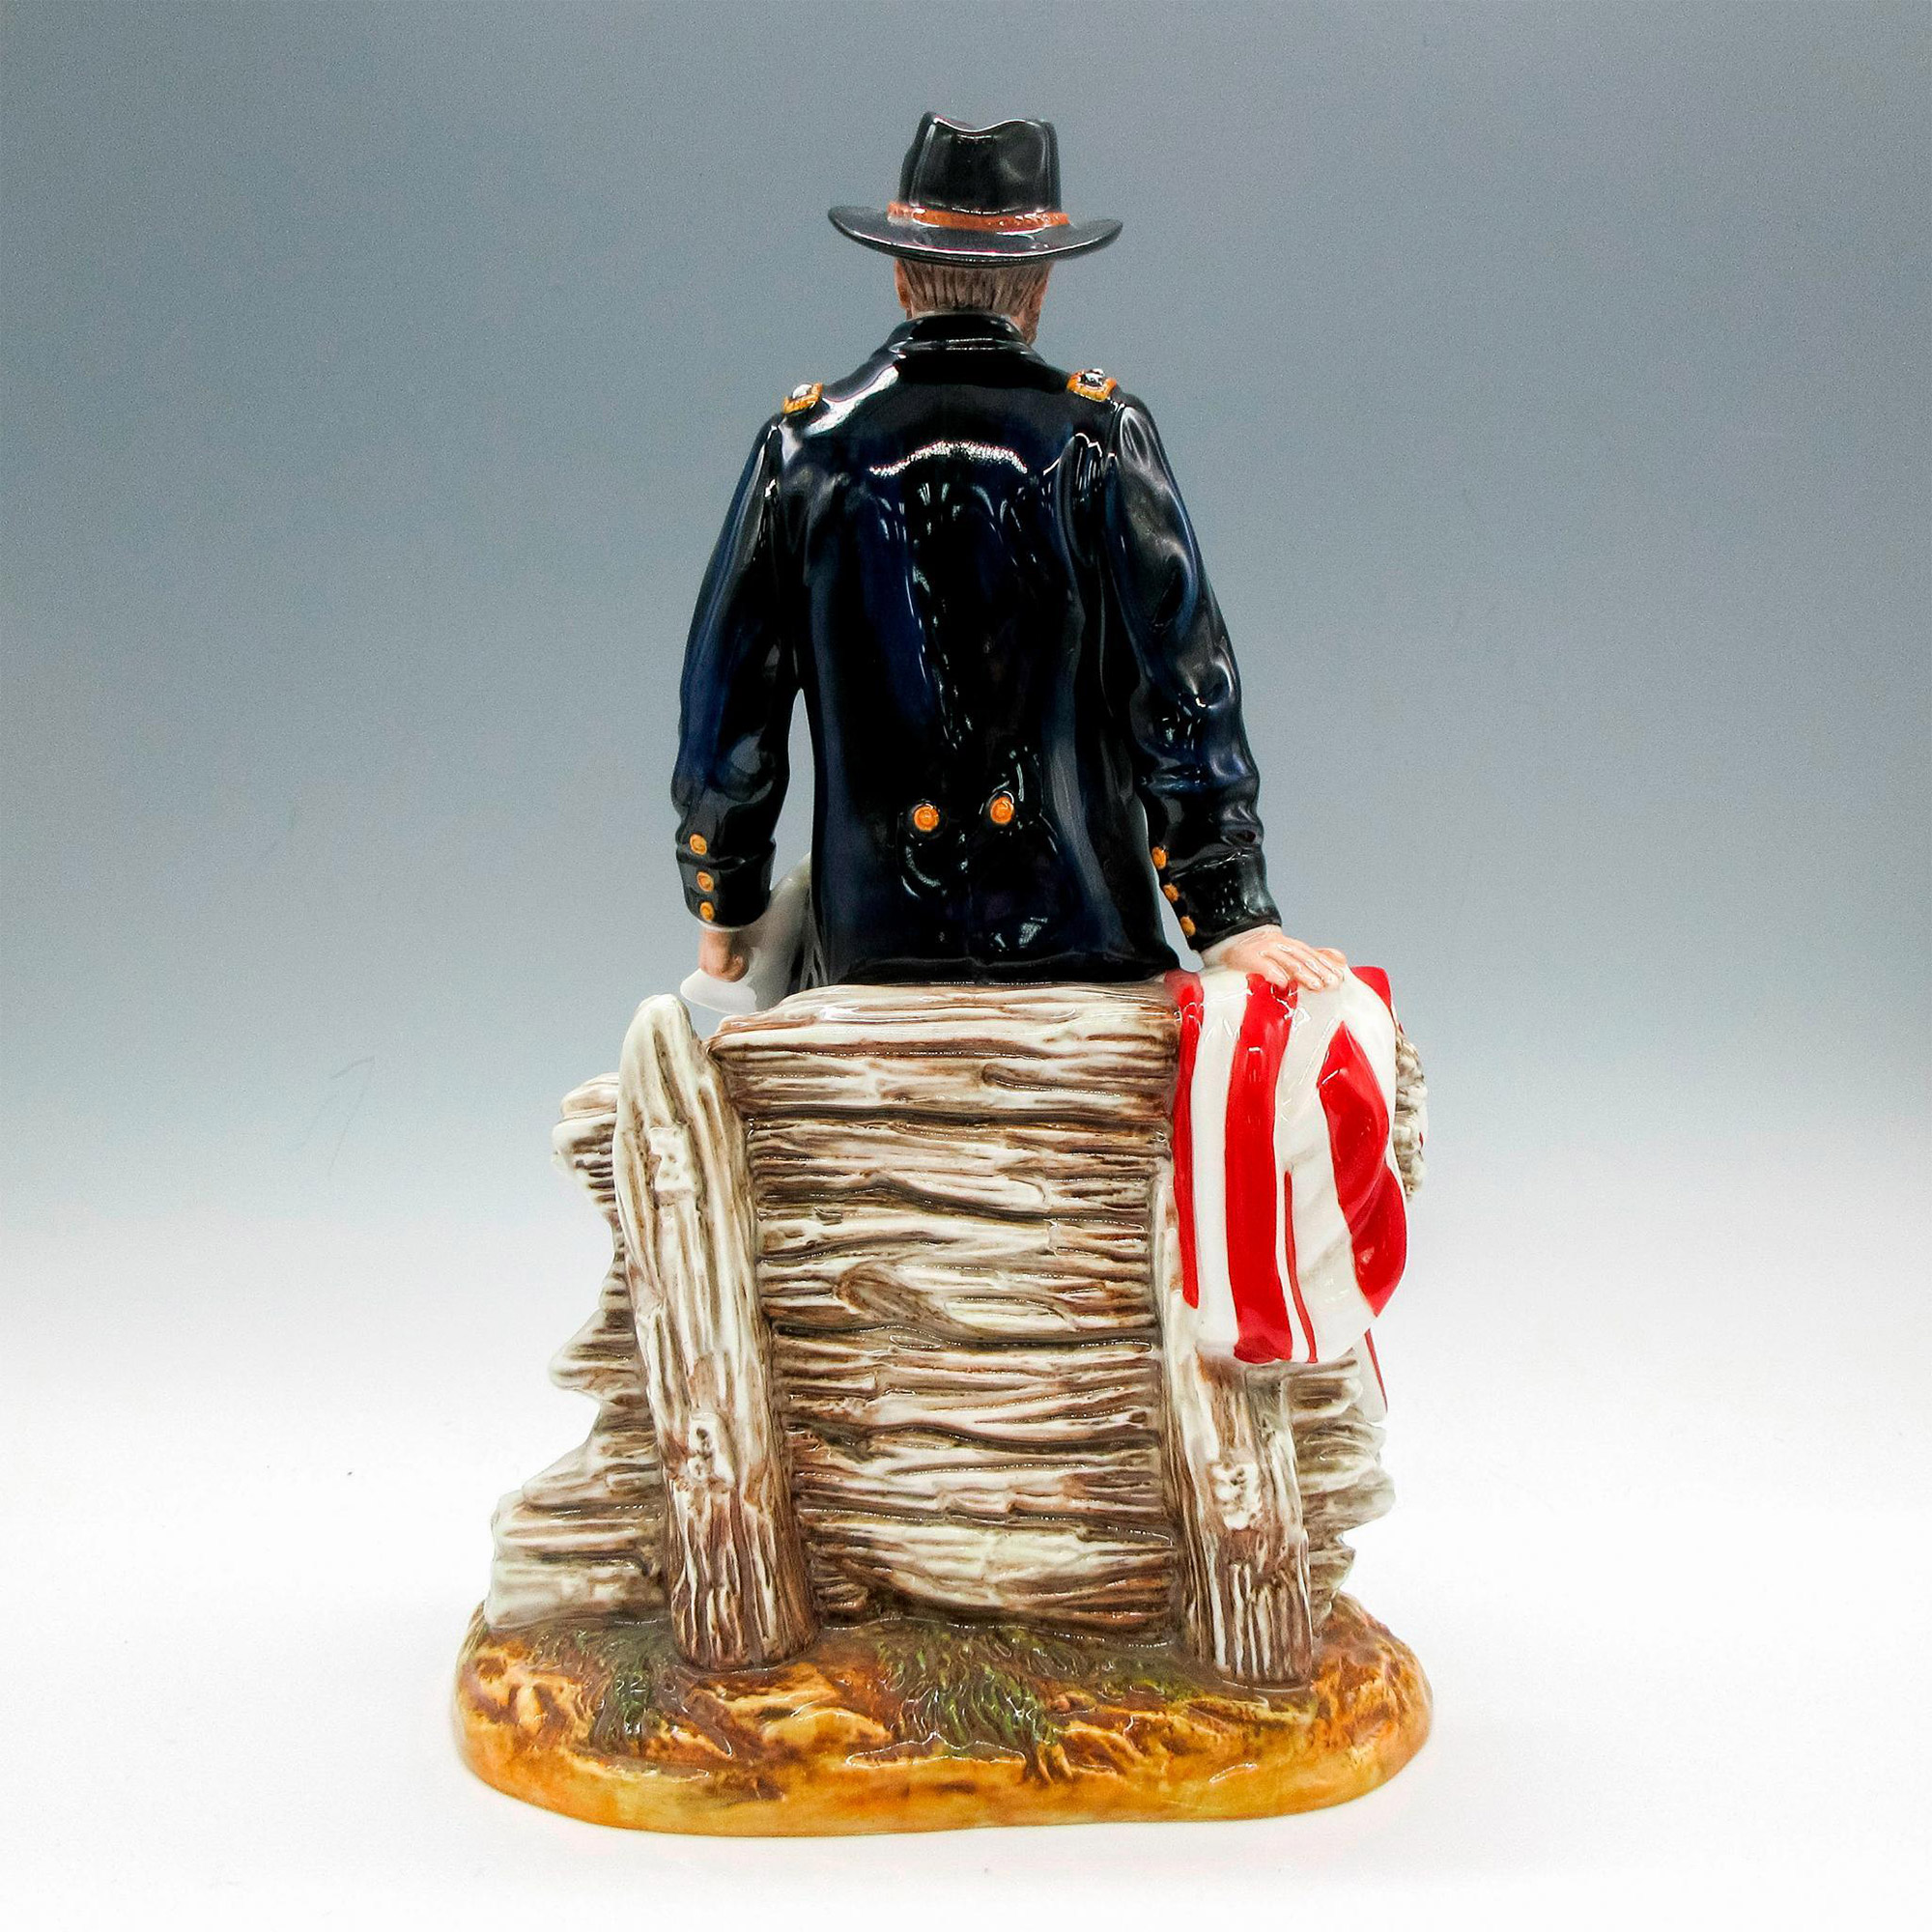 Lt. General Ulysses Grant HN3403 - Royal Doulton Figurine - Image 2 of 4